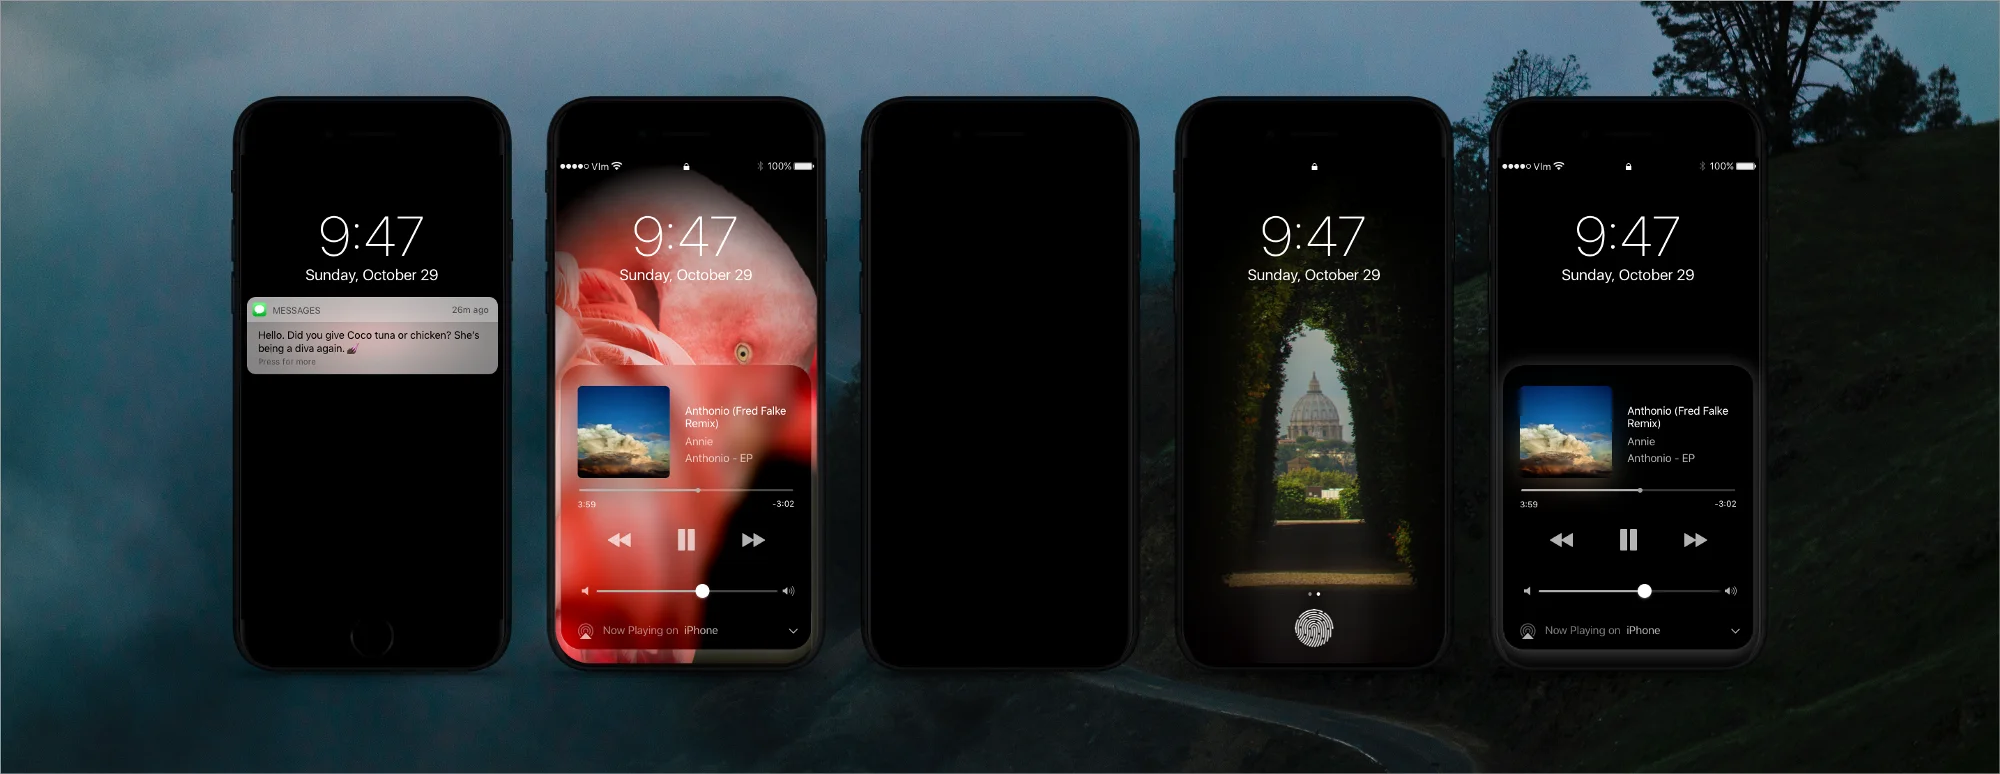 Концепт iPhone 8 с темной темой оформления iOS  - фото 5